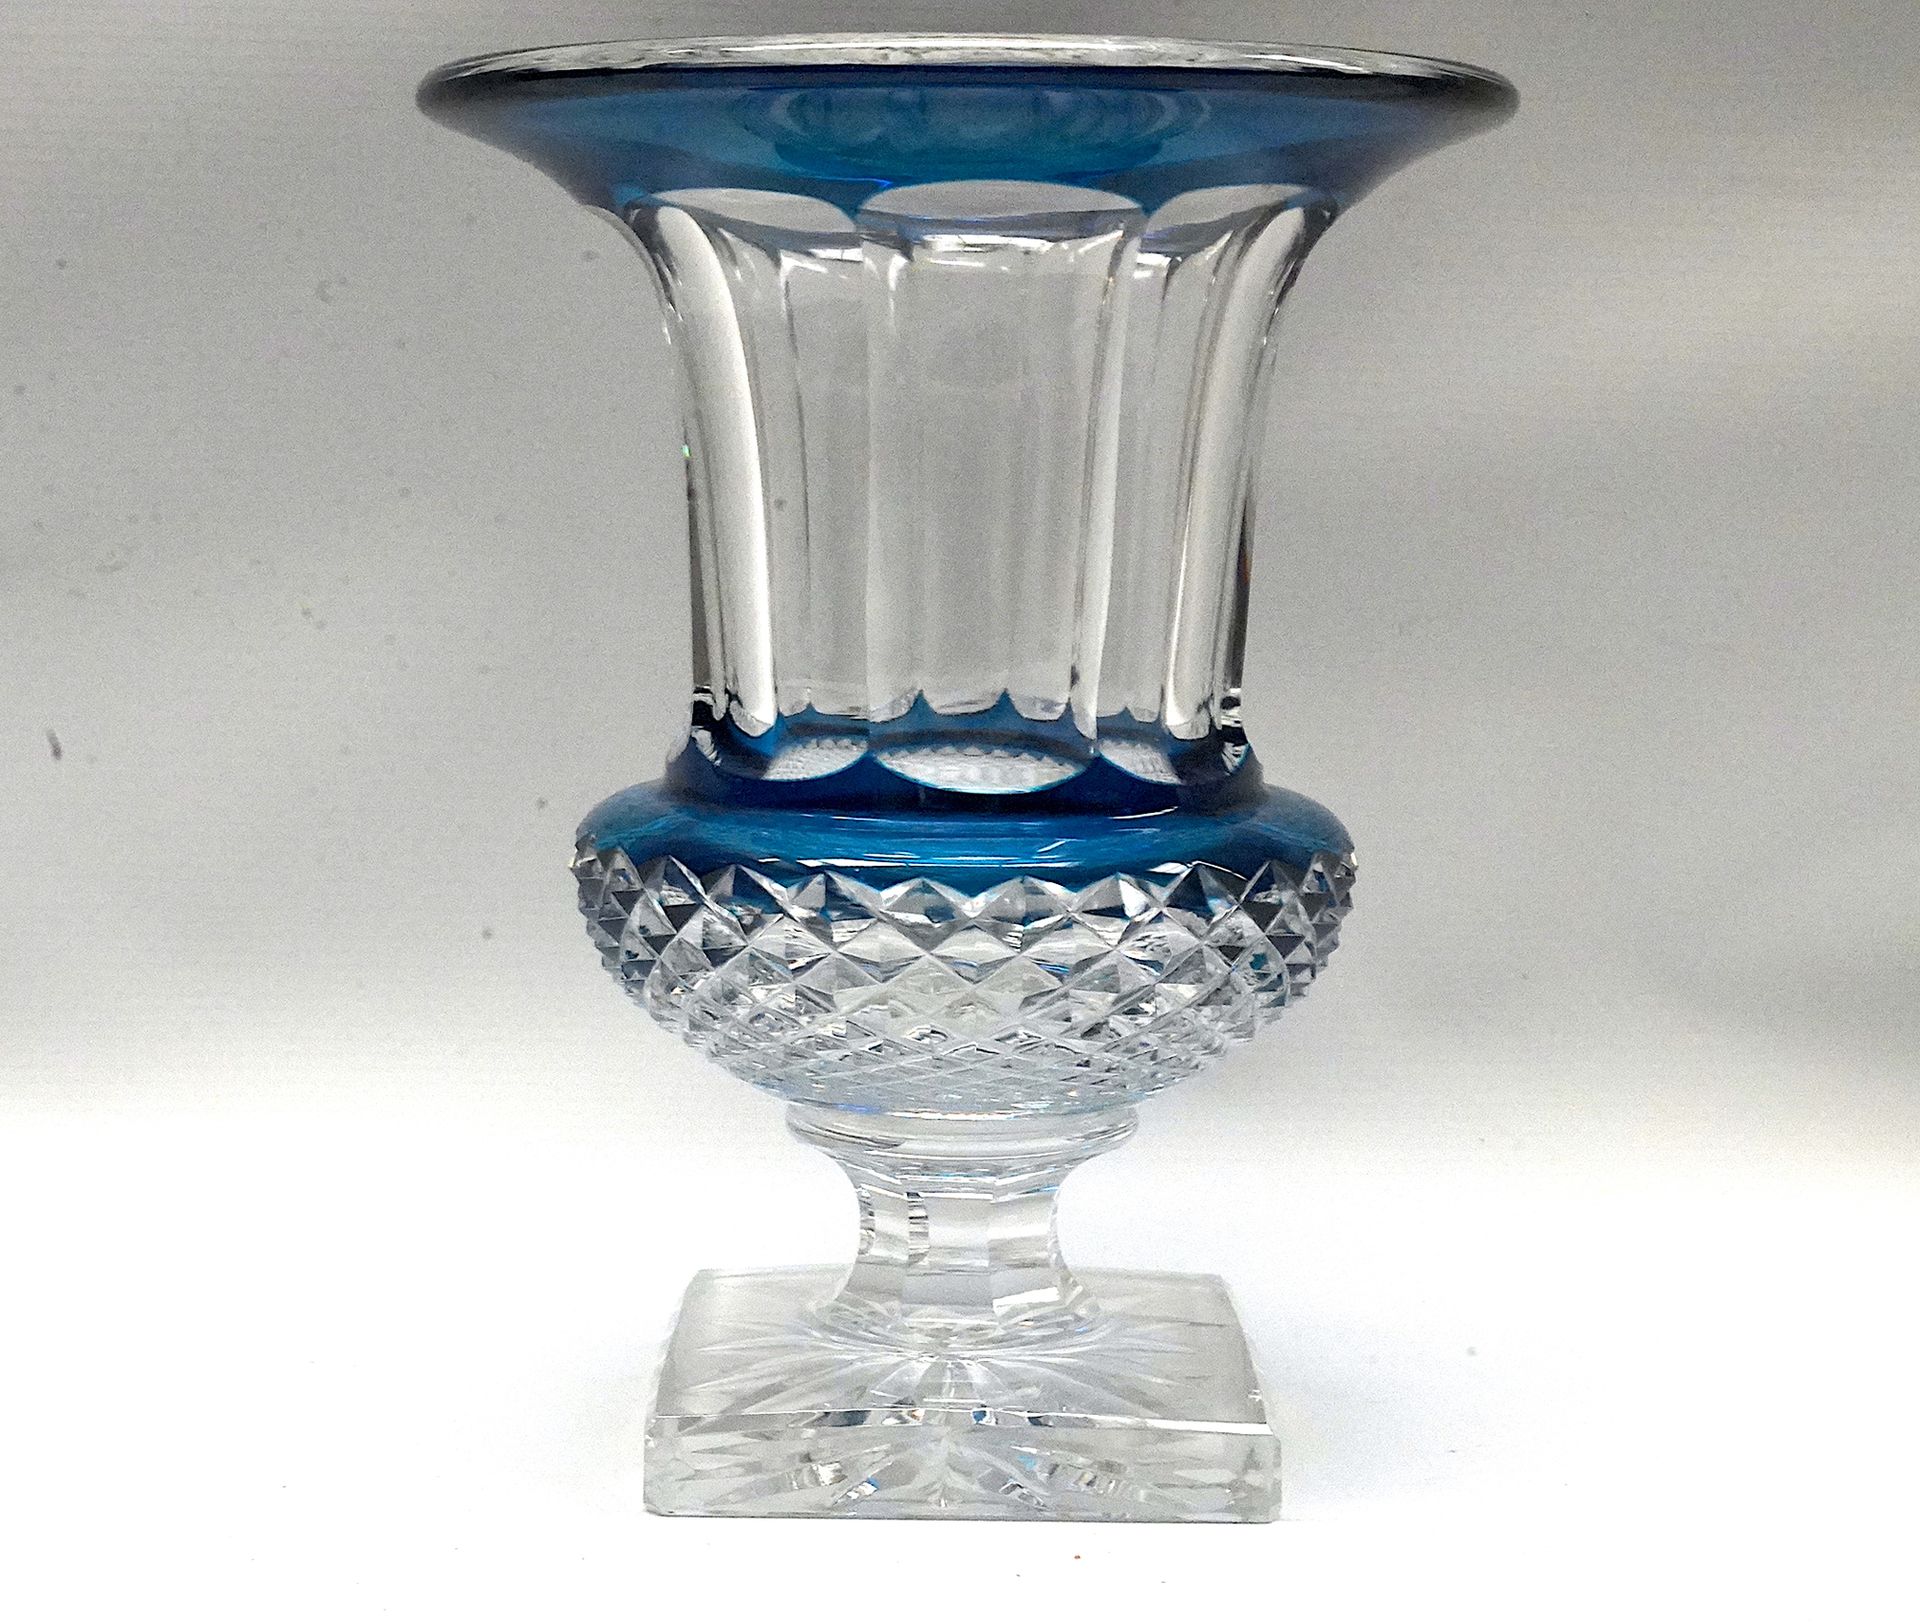 Null 圣路易斯市。白色切割水晶花瓶，有蓝色衬里。凡尔赛宫模型。24 x 20厘米。